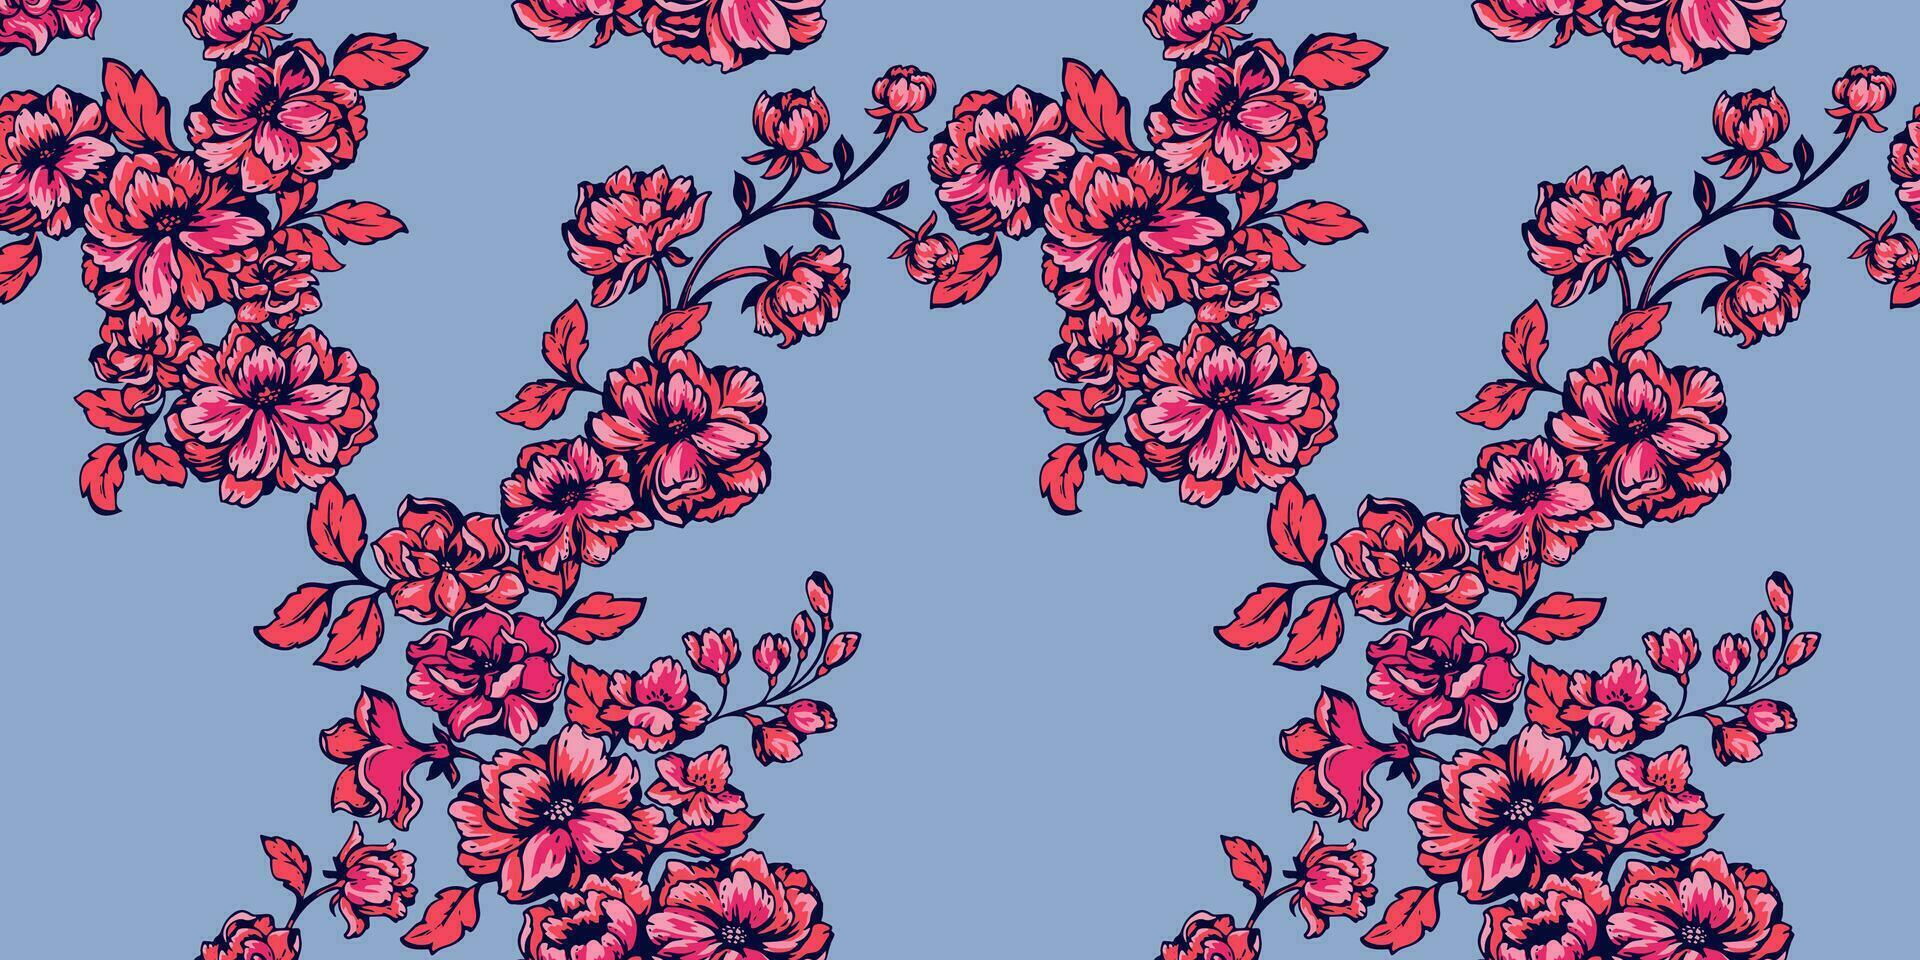 skön blomning blommor mönster i många slag. ljus röd blommor gobeläng. vektor hand ritade. mall för textil, mode, skriva ut, yta design, papper, omslag, tyg